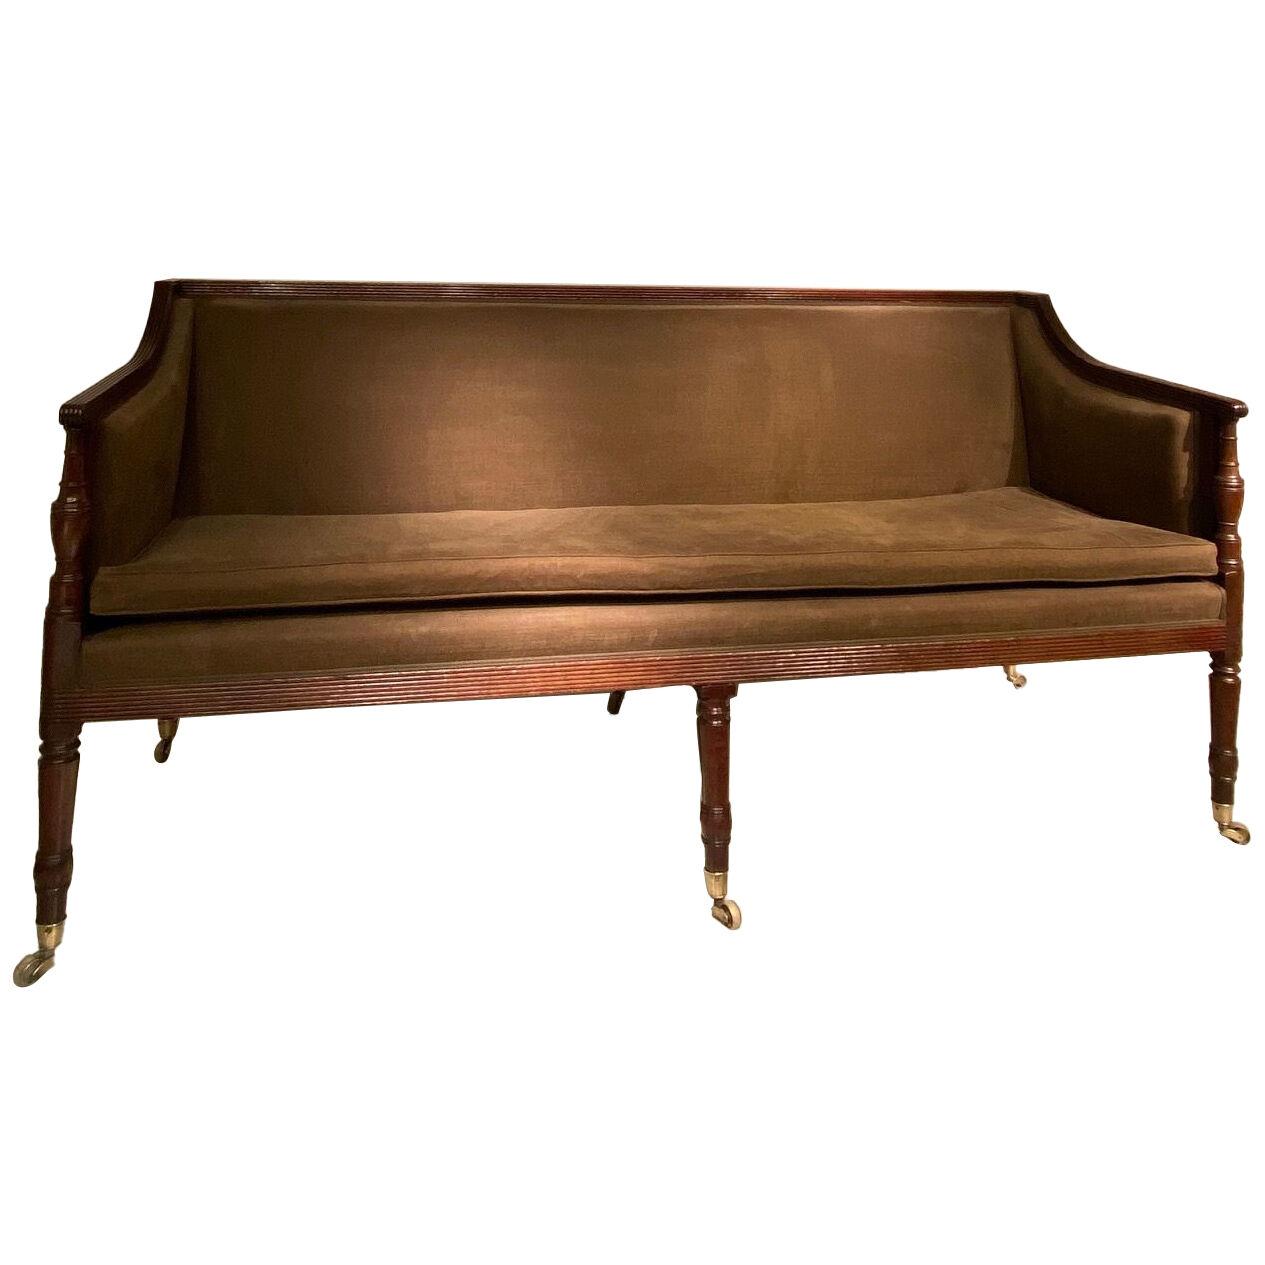 A Regency mahogany Sofa